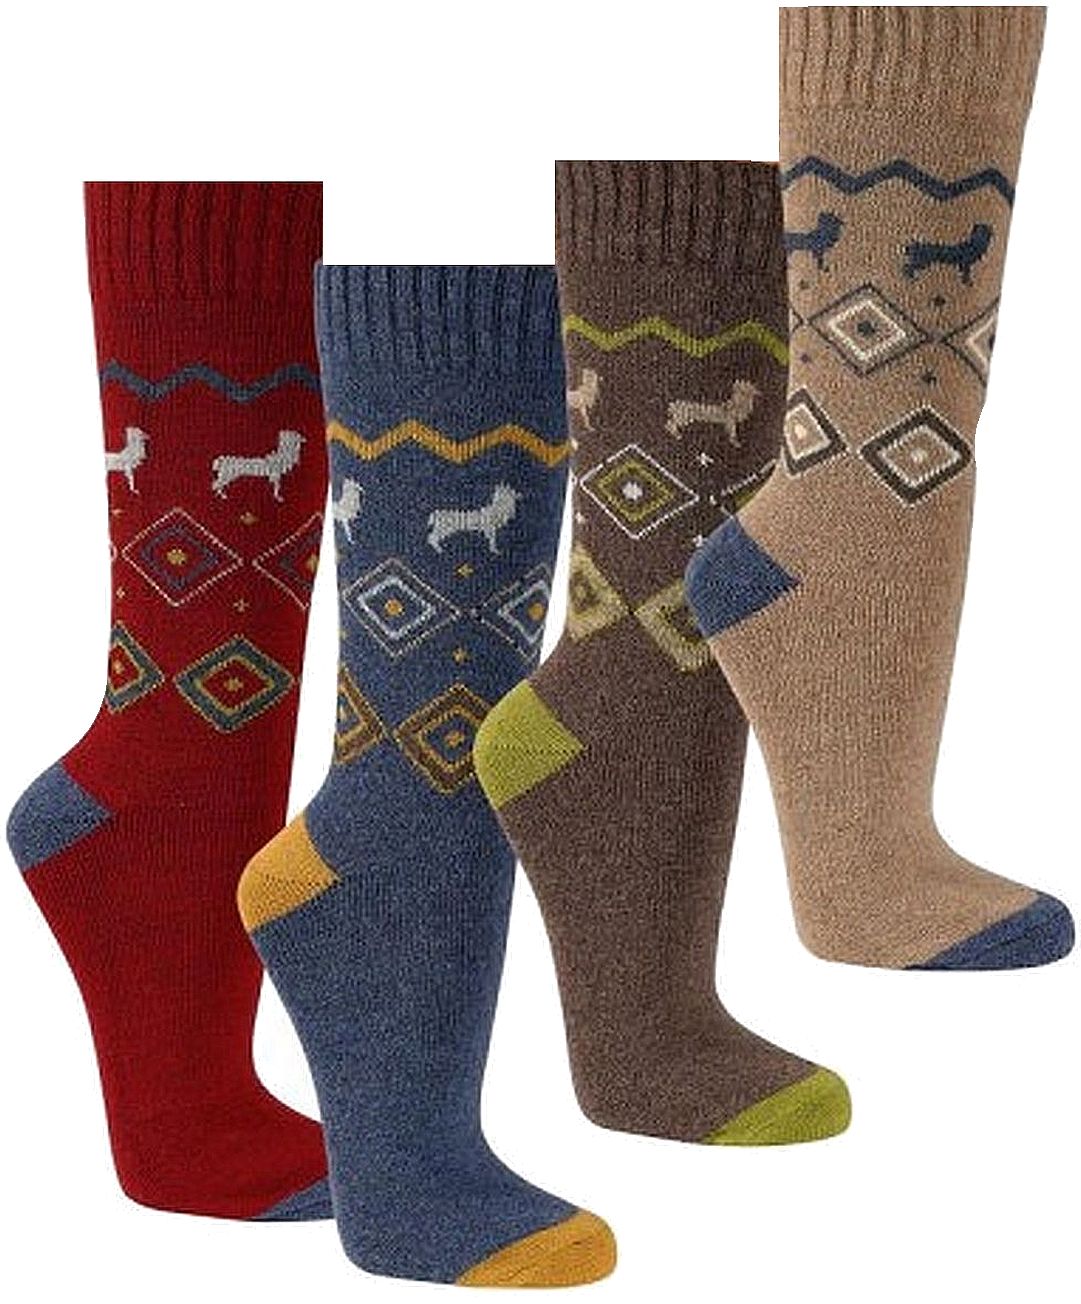 Hygge-Socken mit Alpakawolle glatt-gestrickt 2 Paar